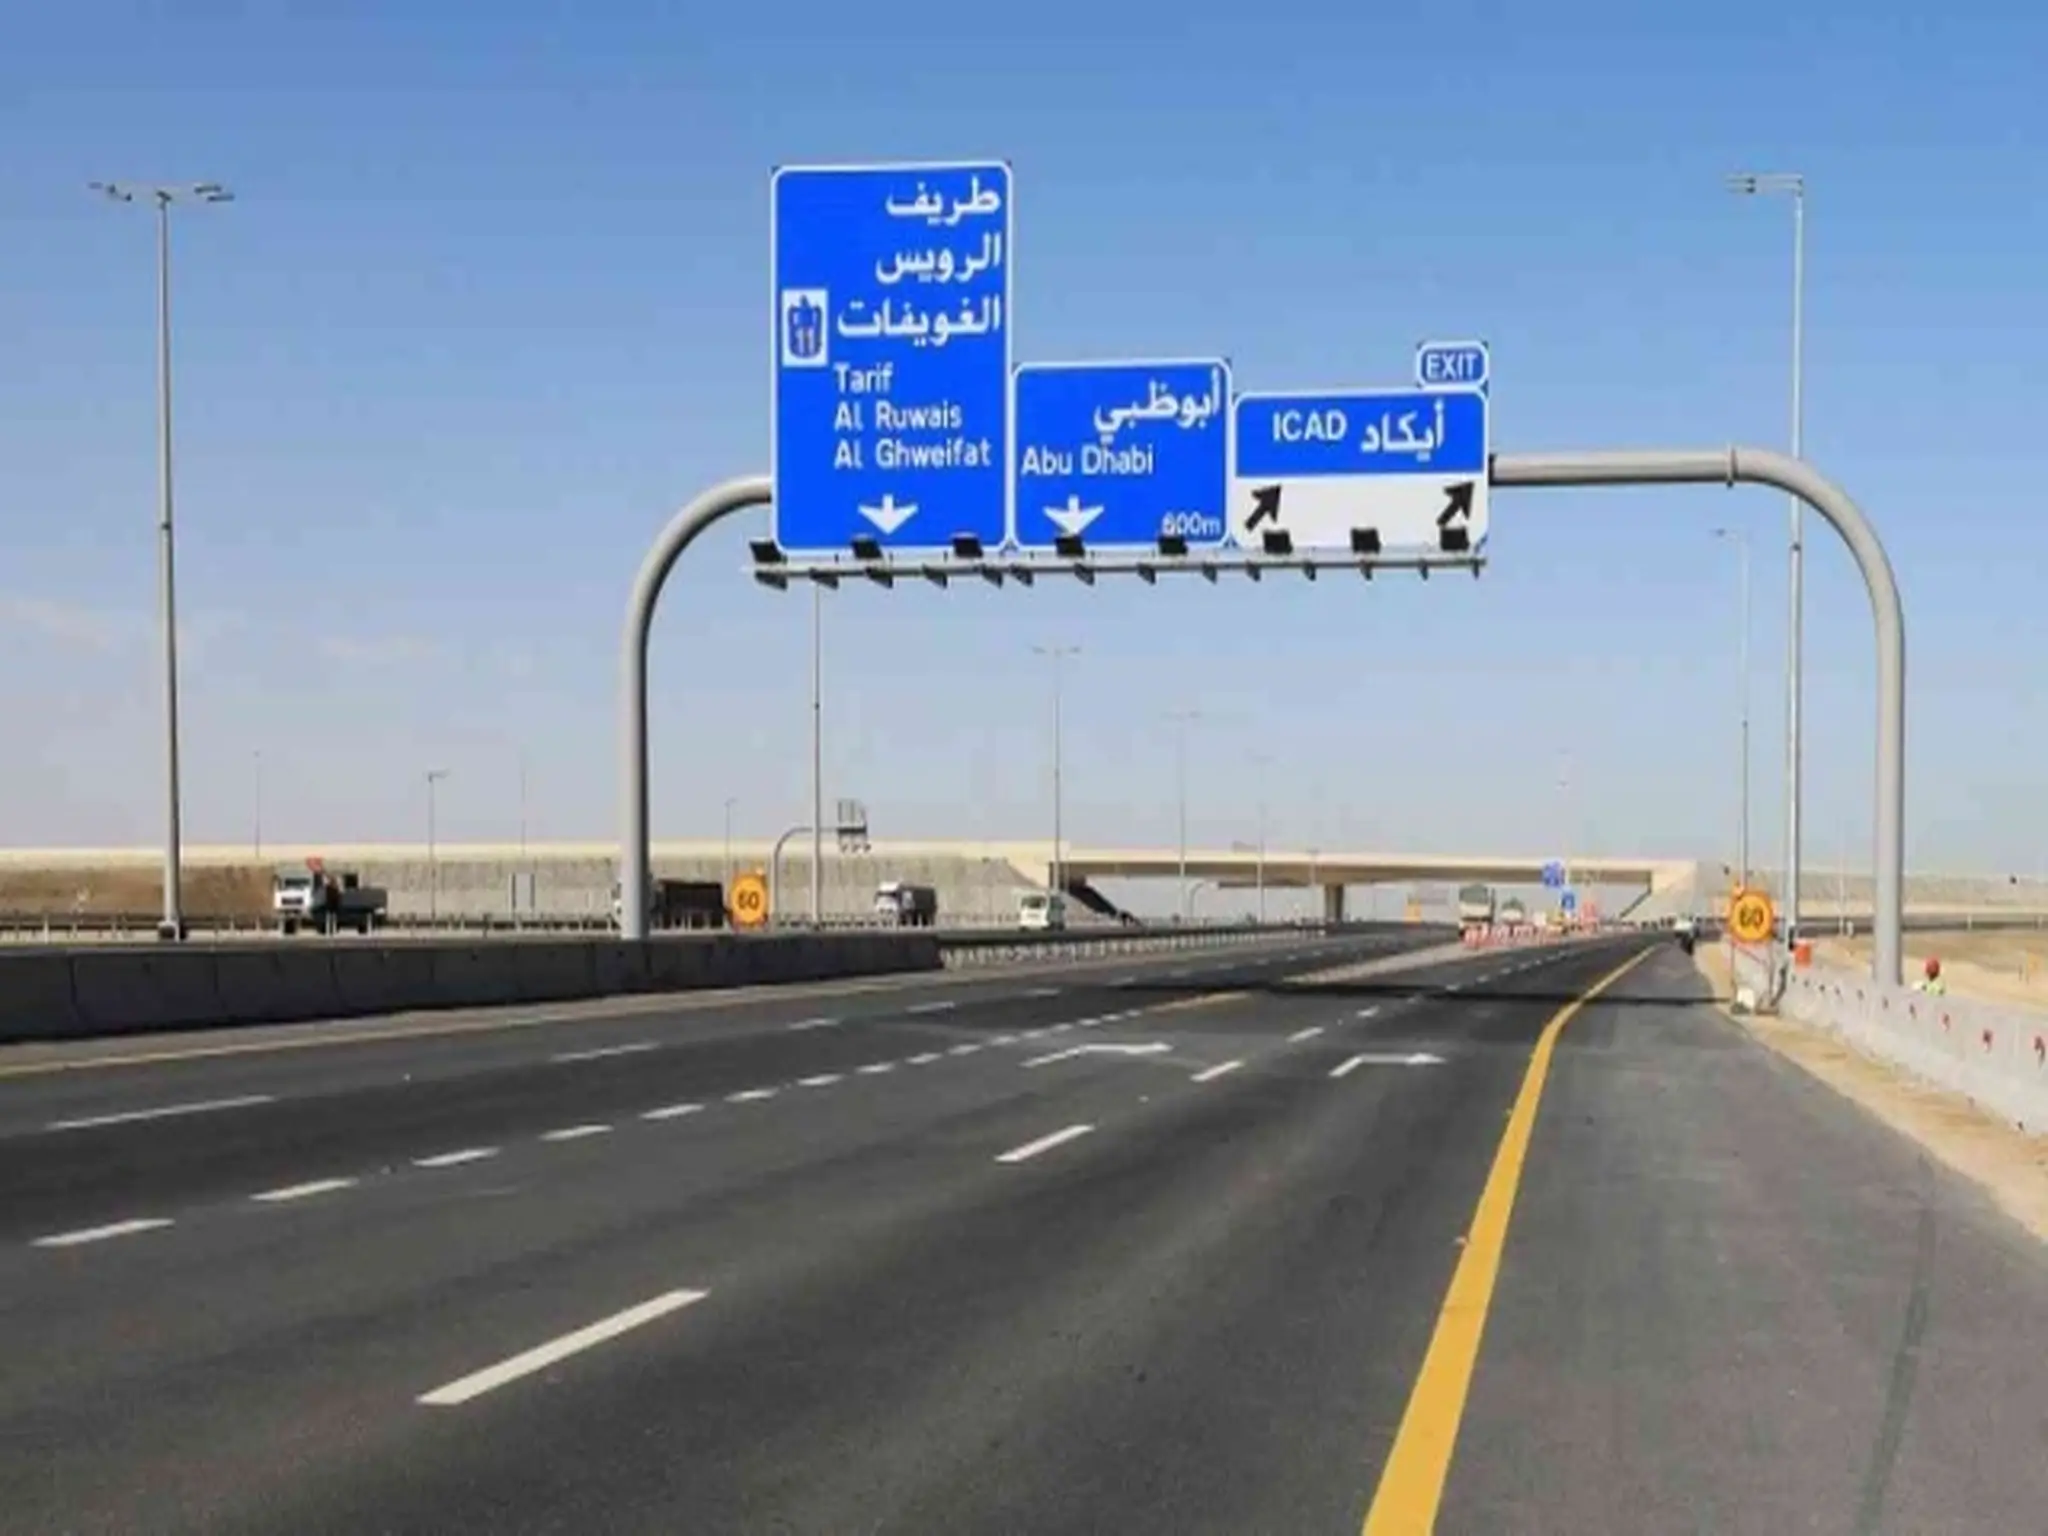 تعليمات جديدة من قبل بلدية أبوظبي لقائدي السيارات المتجهين إلى جسر المقطع